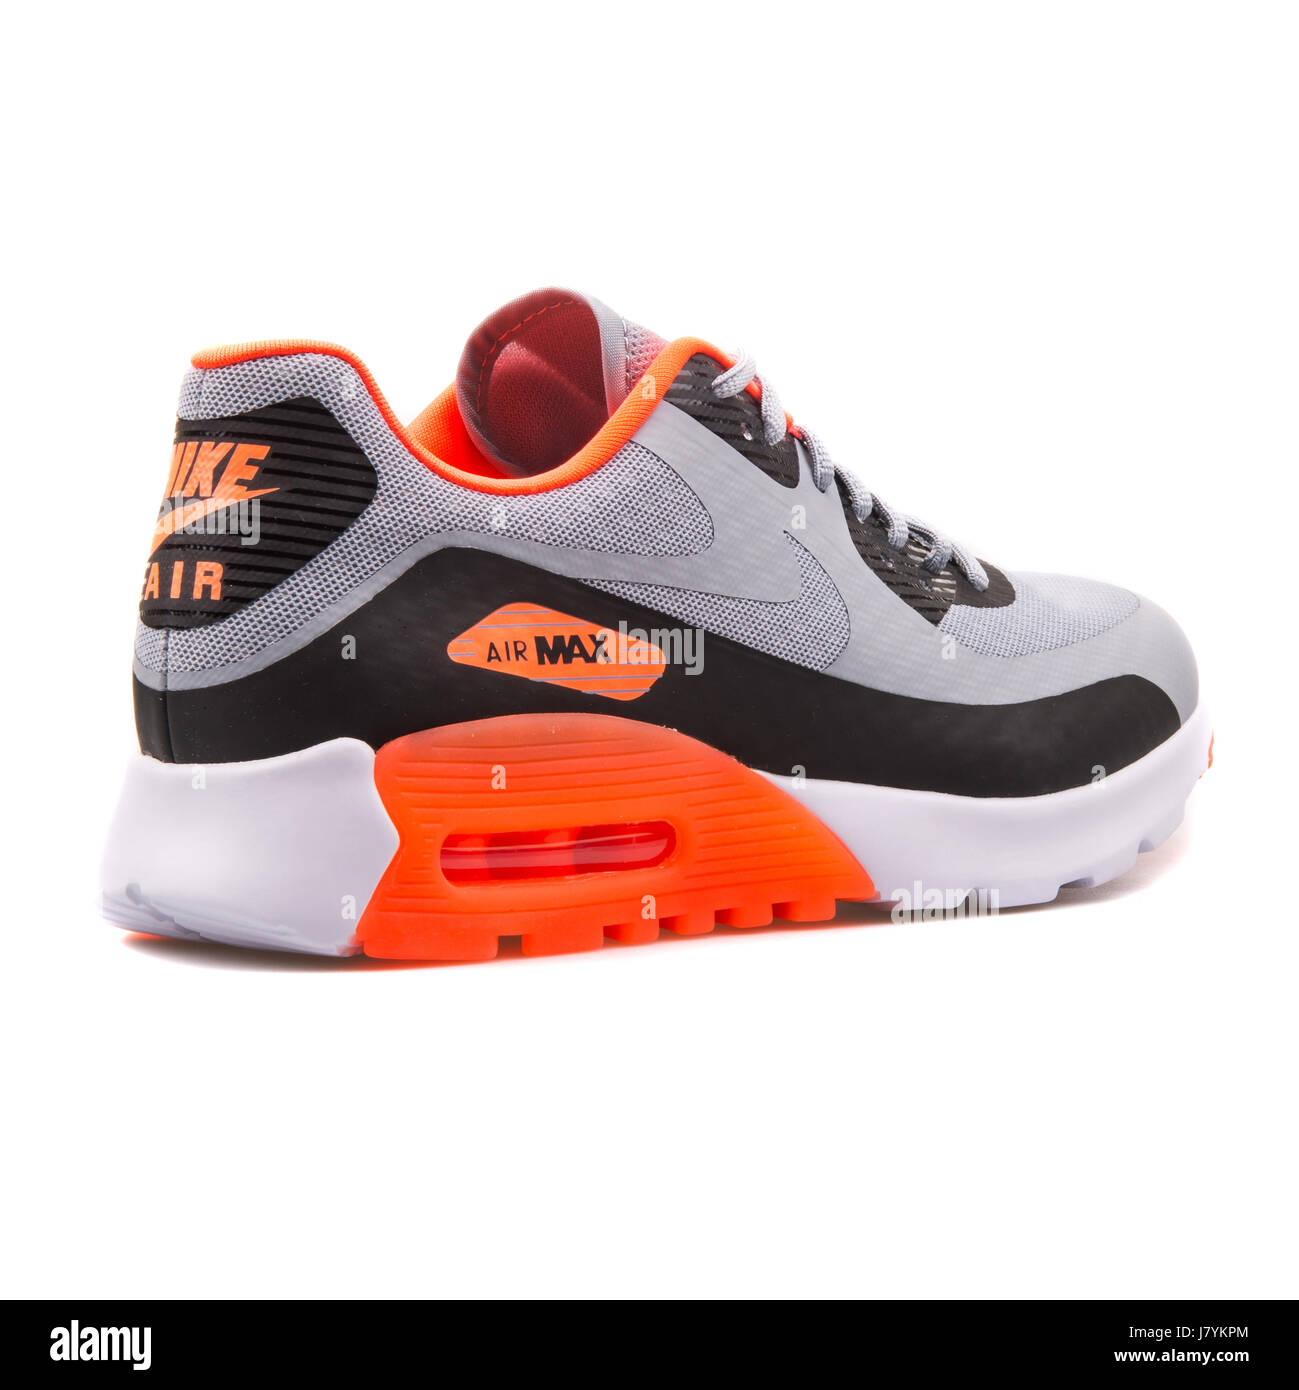 Innecesario Interprete Repetirse Nike Air Max 90 W Ultra BR mujer gris y naranja ejecutando Sneakers -  725061-001 Fotografía de stock - Alamy